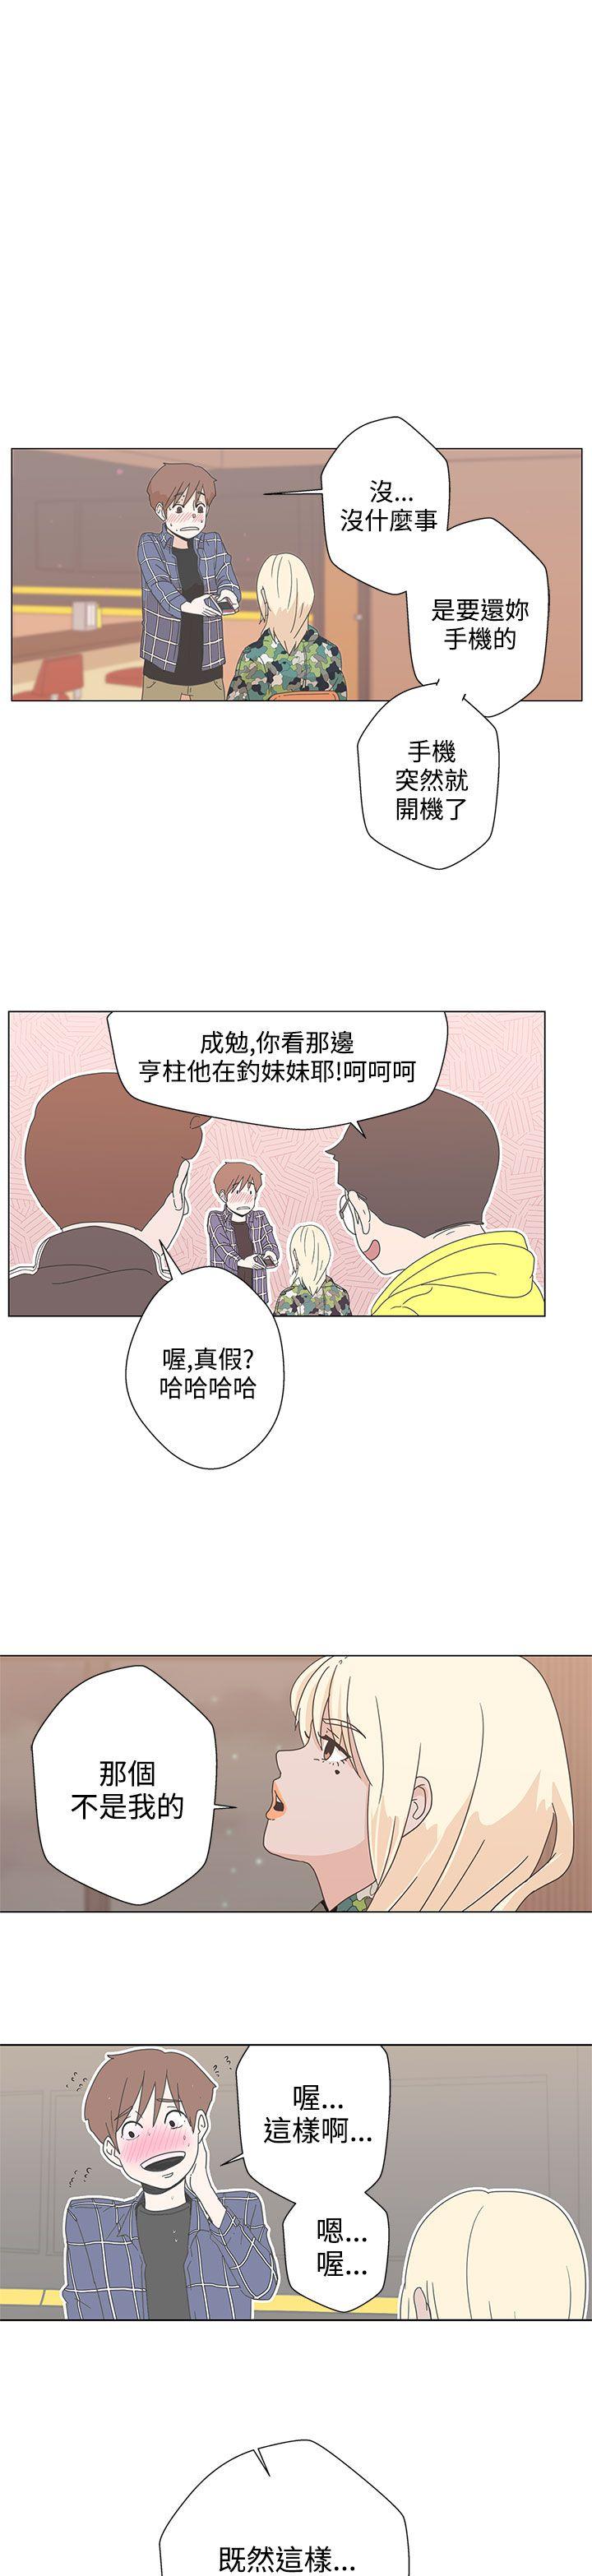 韩国污漫画 LOVE 愛的導航G 第1话 50